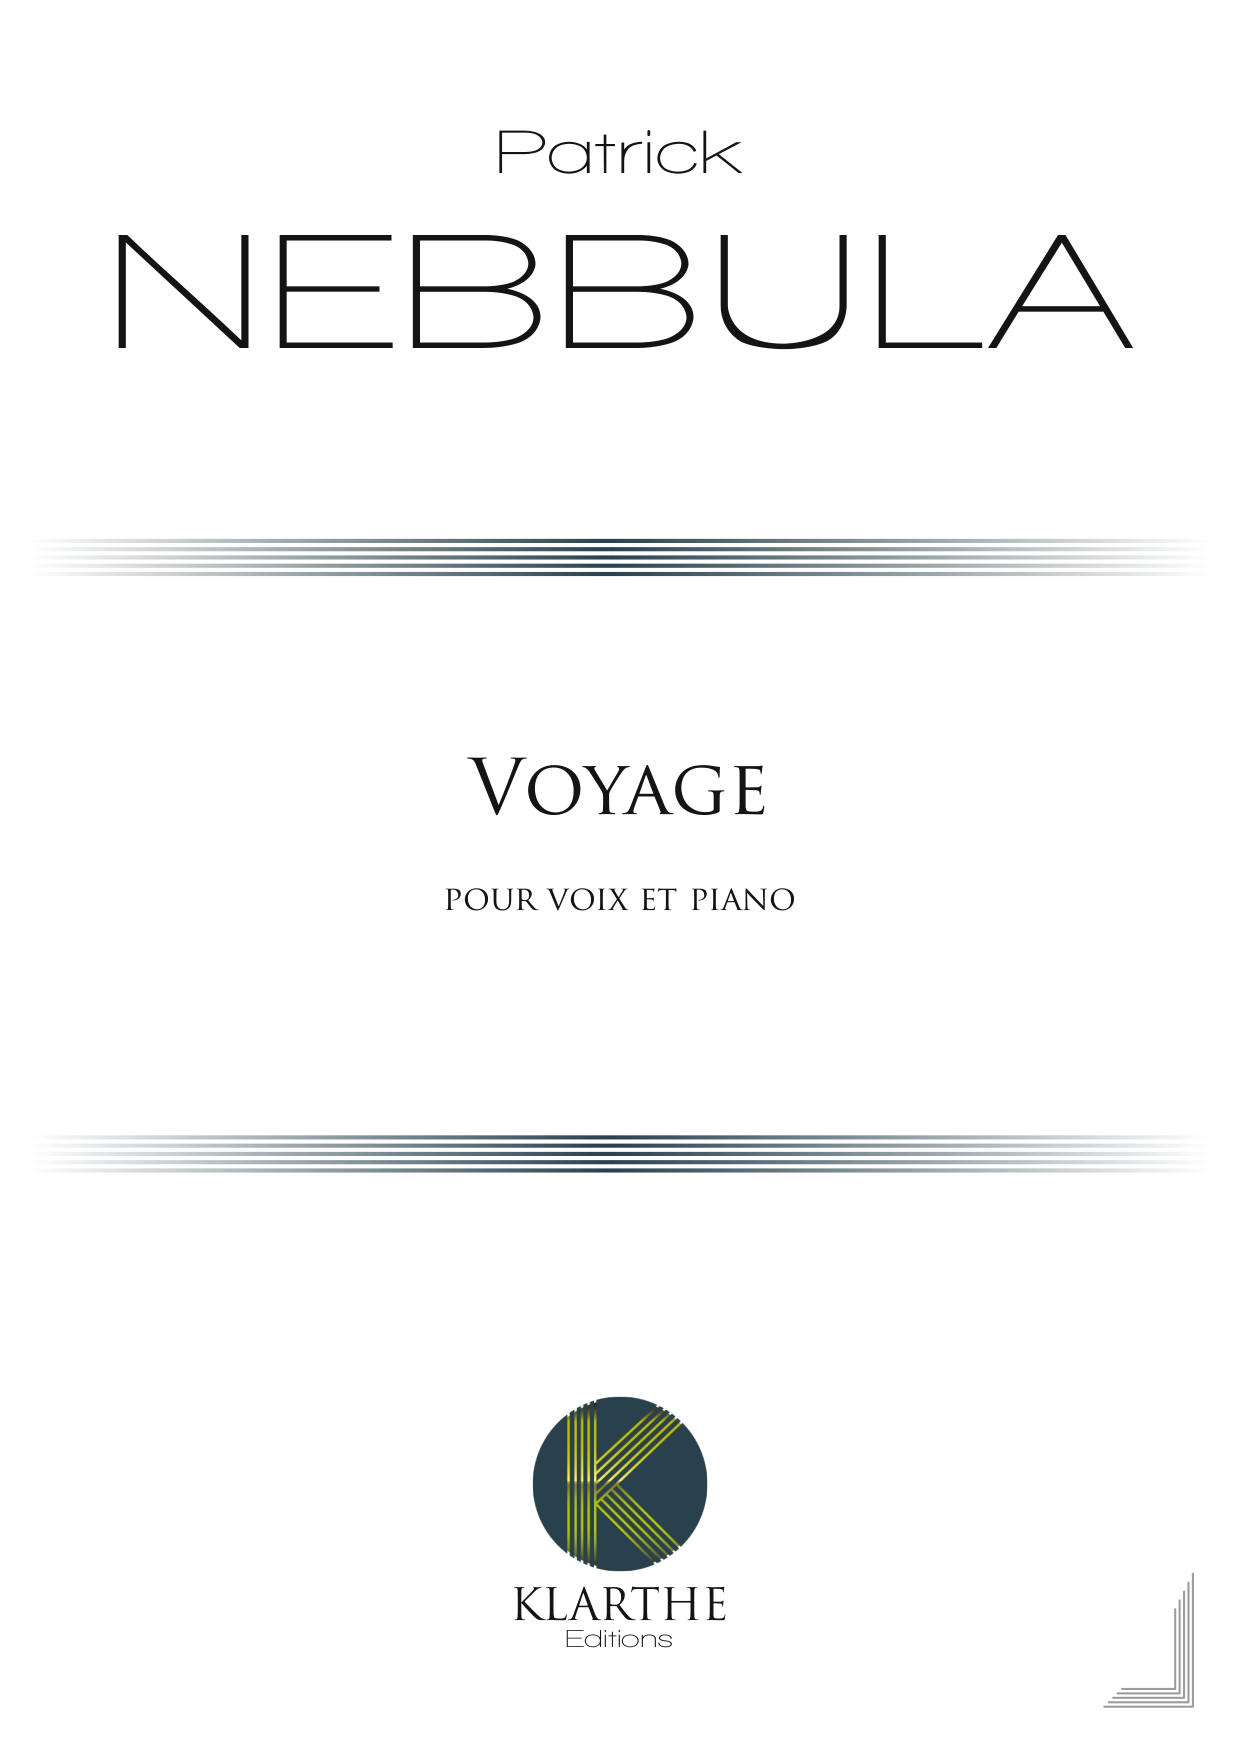 Voyage (NEBBULA PATRICK)